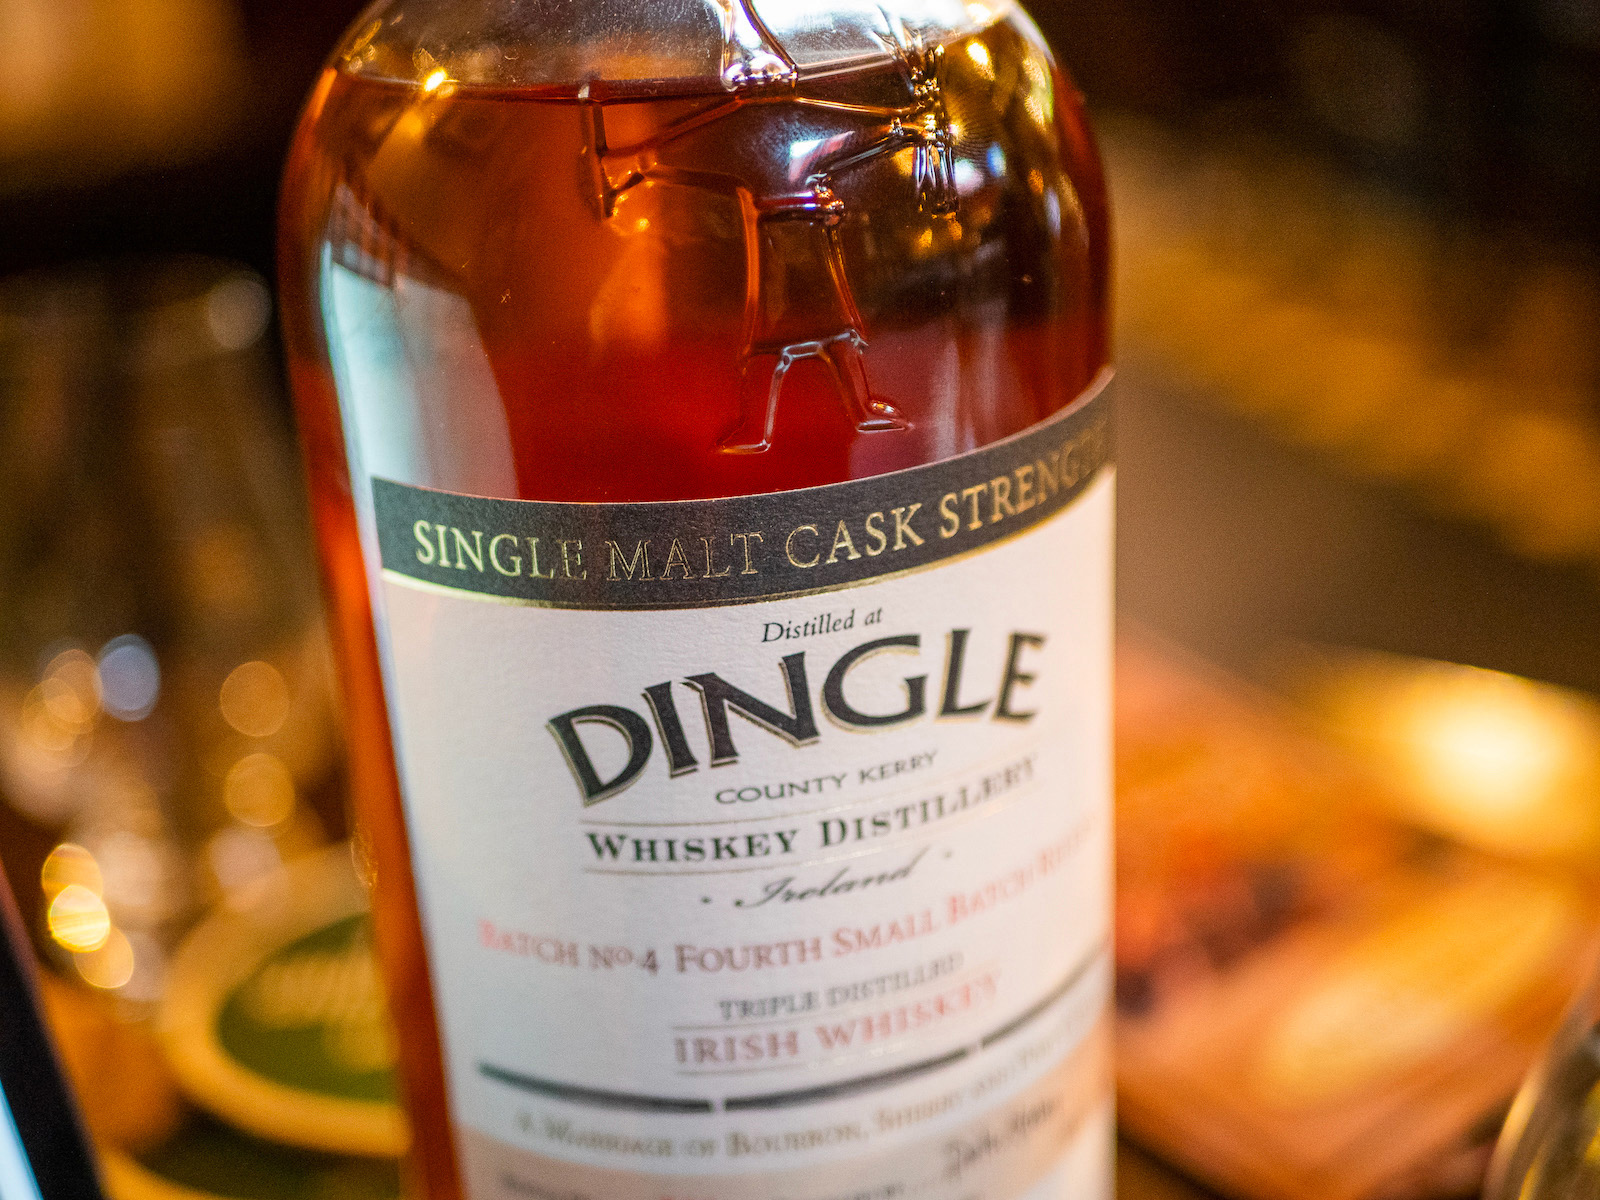 Dingle single malt, batch 4